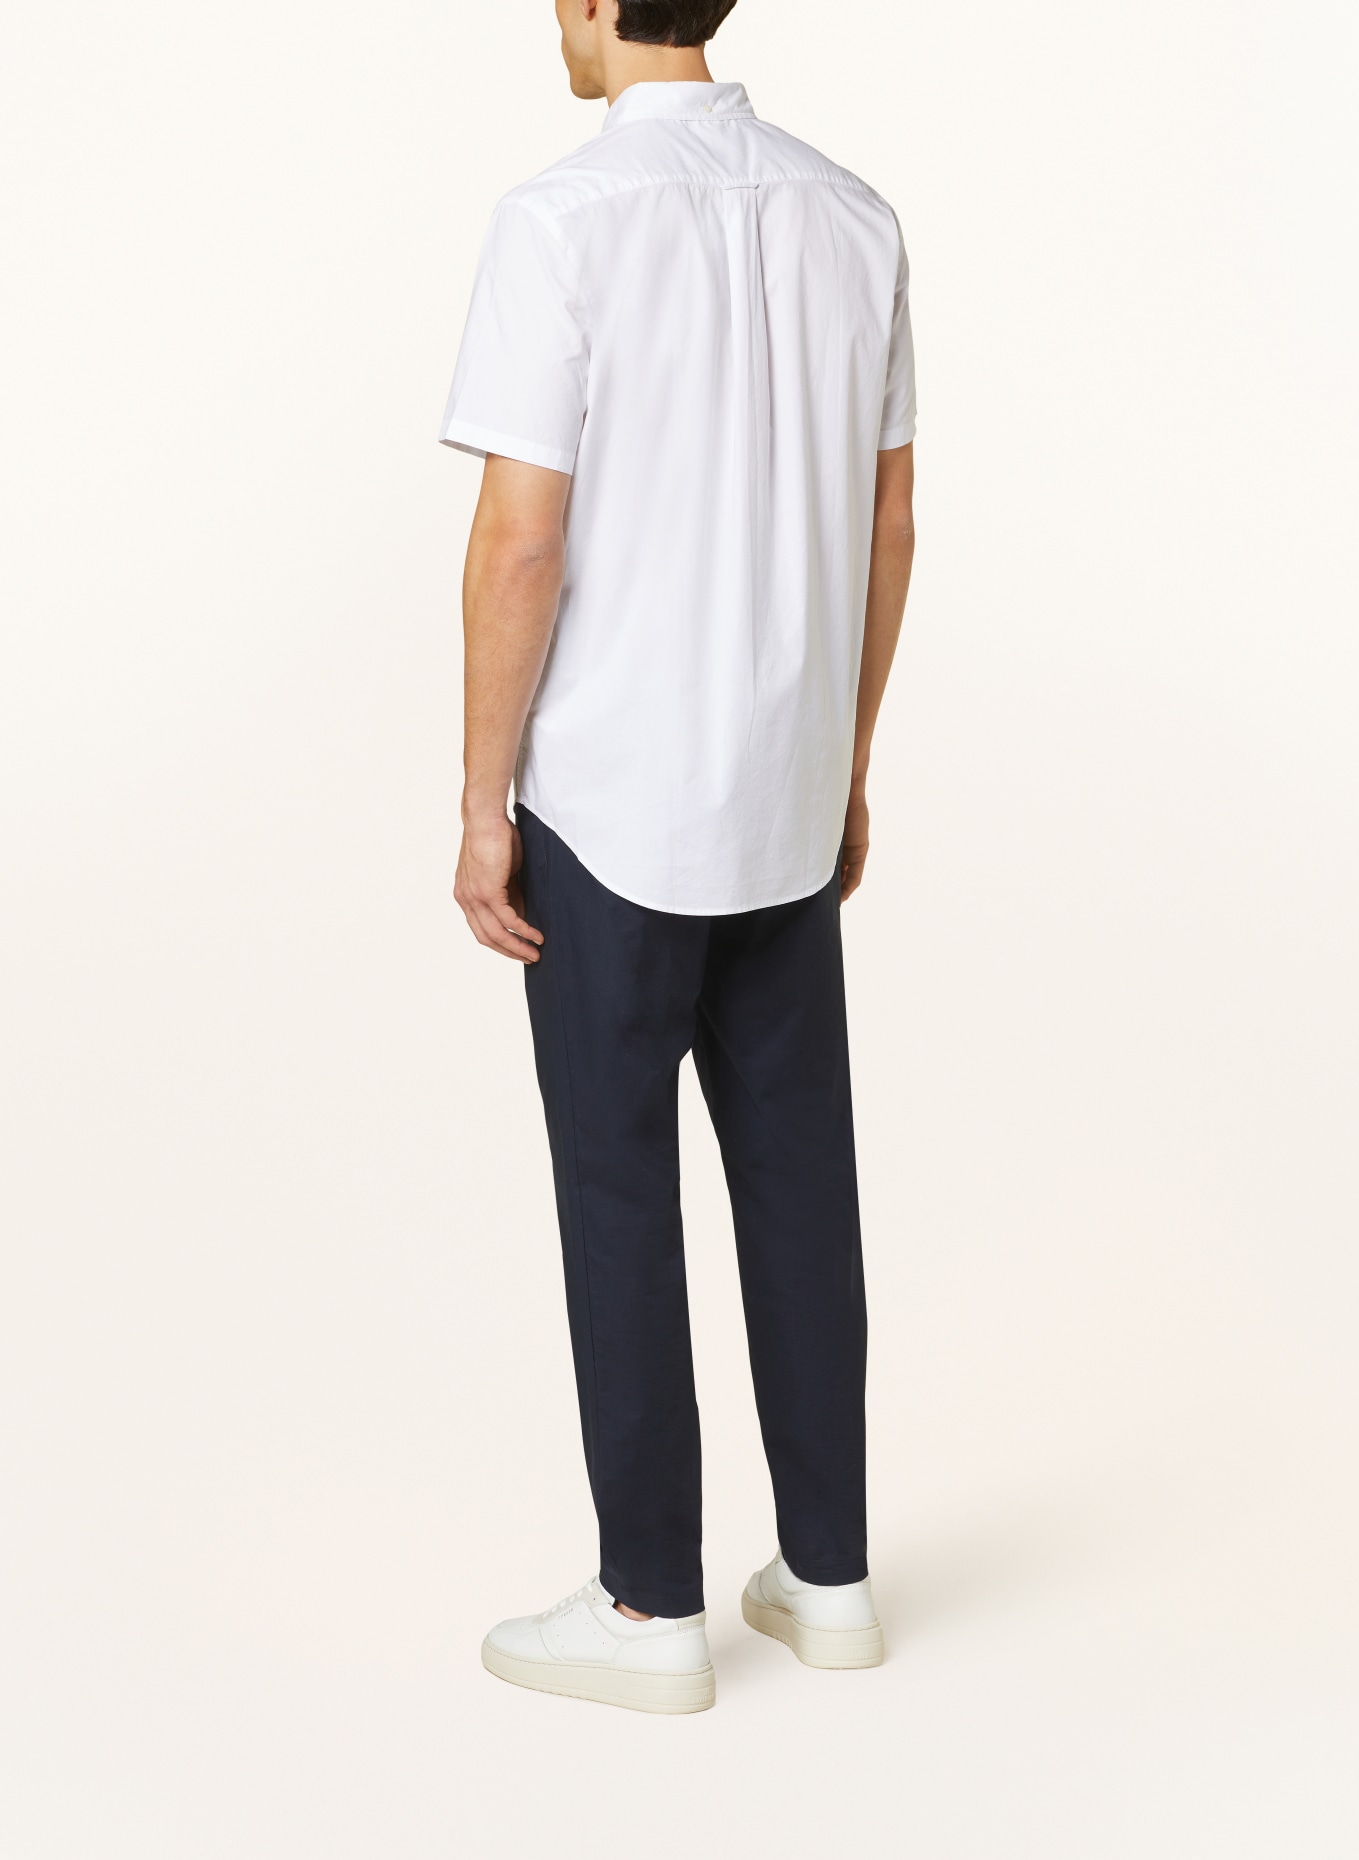 GANT Short sleeve shirt comfort fit, Color: WHITE (Image 3)